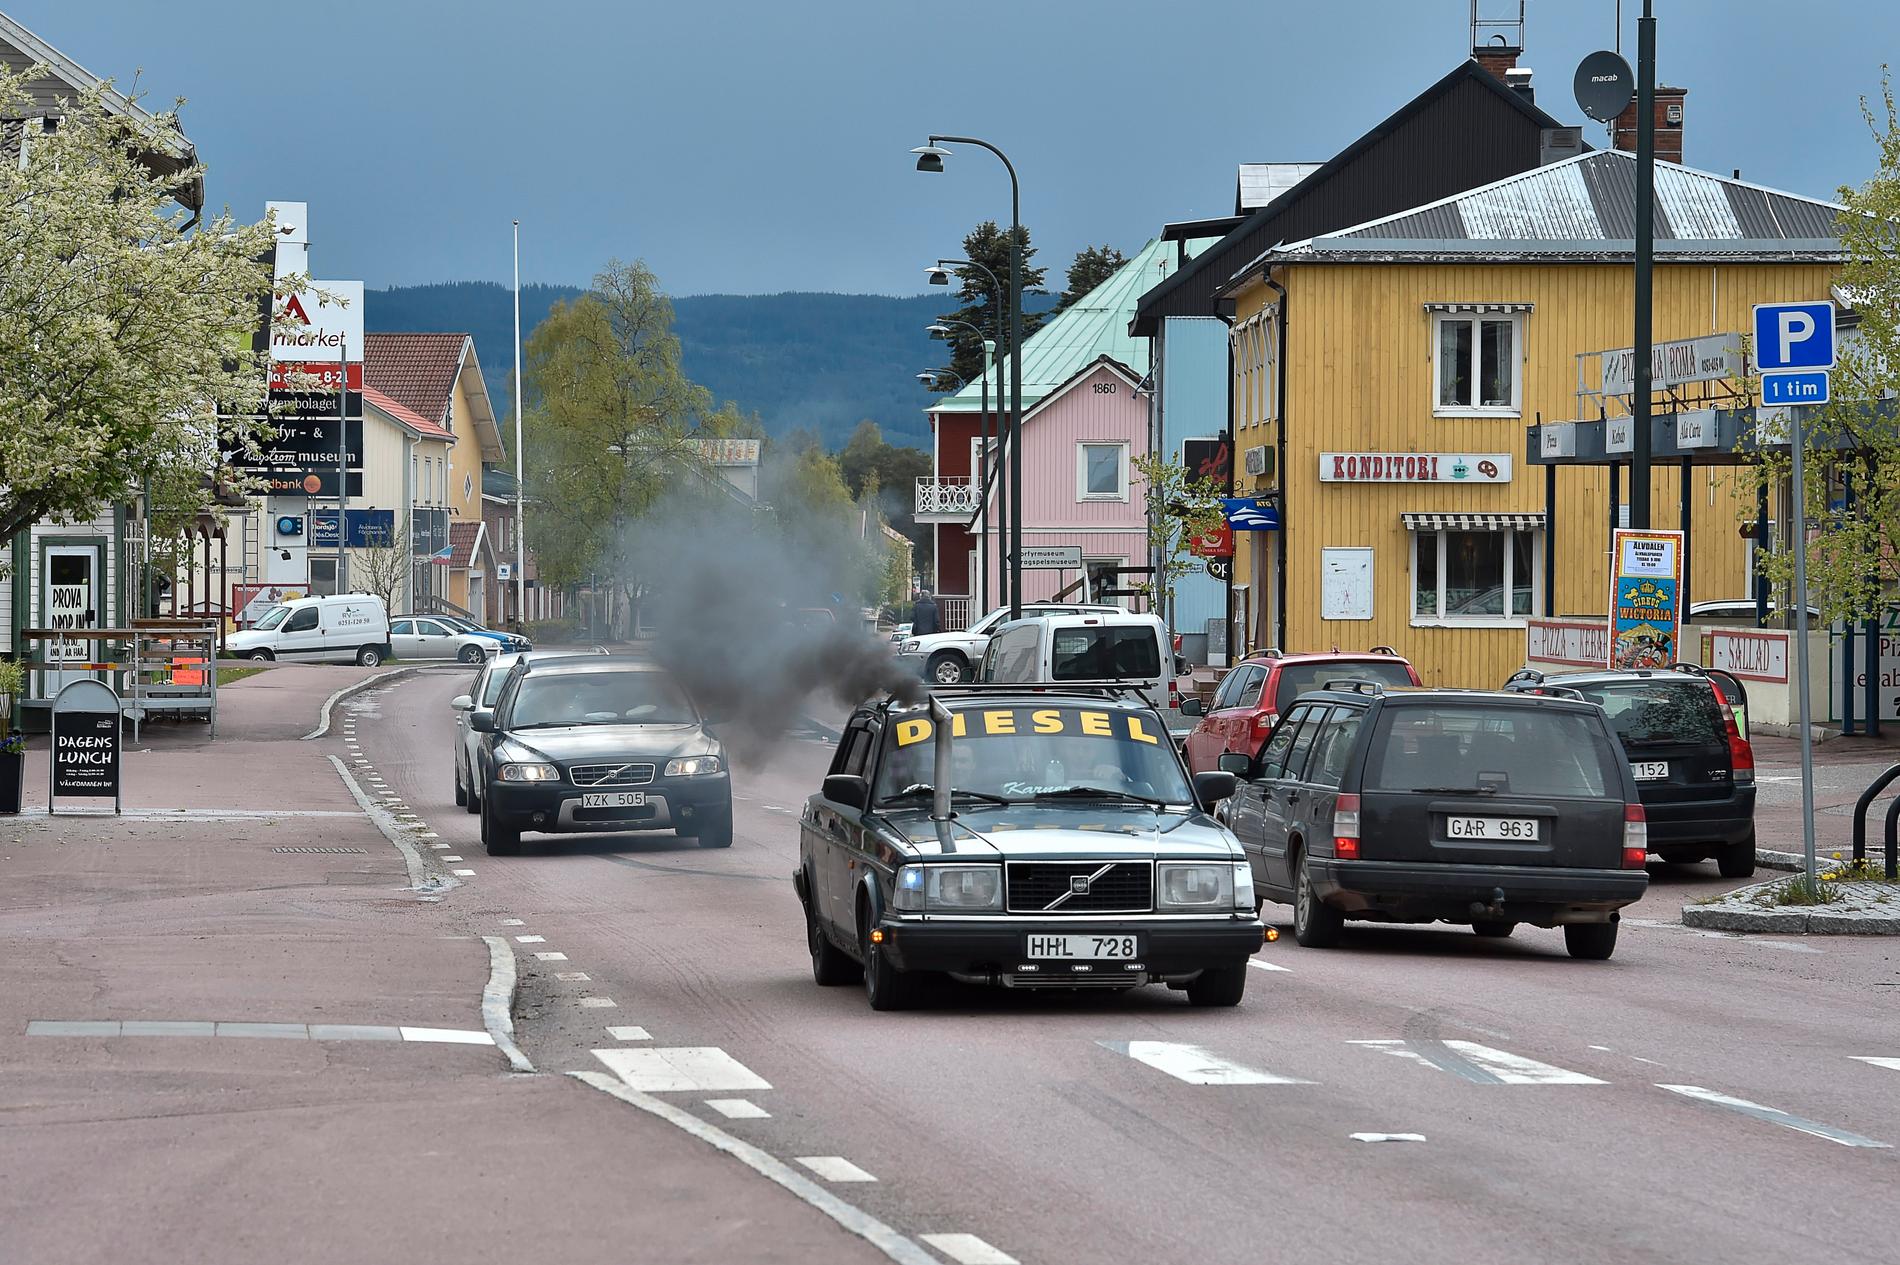 Bilar som åker runt i byar och städer och spelar hög musik håller folk vakna om nätterna. Bilden är tagen i Älvdalen i Dalarna. Arkivbild.